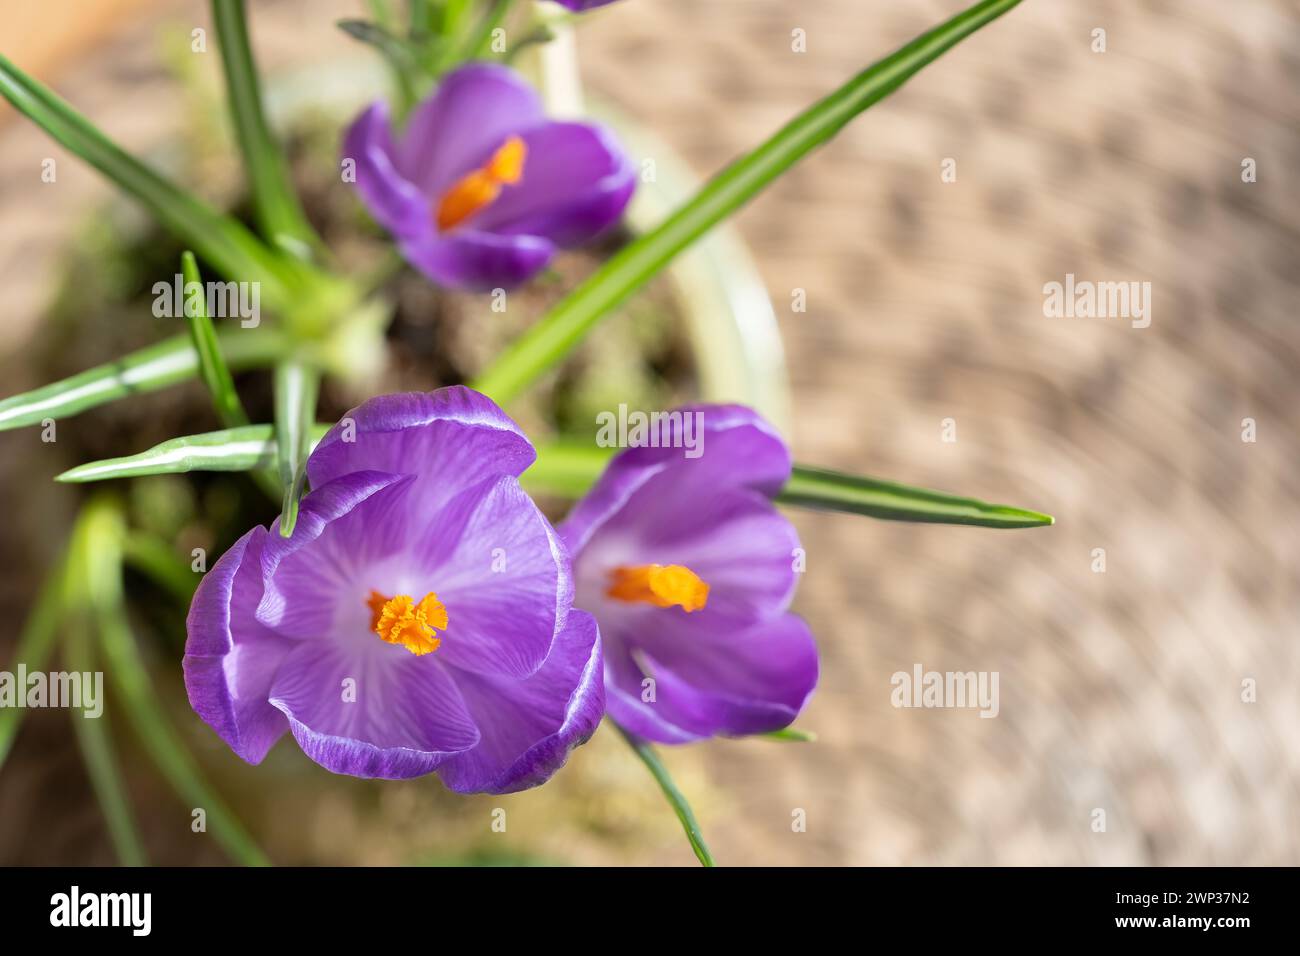 Un crocus Crocus sativus une plante saisonnière à fleurs en pleine floraison avec une fleur pourpre ouverte. Les bulbes ont été placés dans un pot et cultivés à l'intérieur Banque D'Images